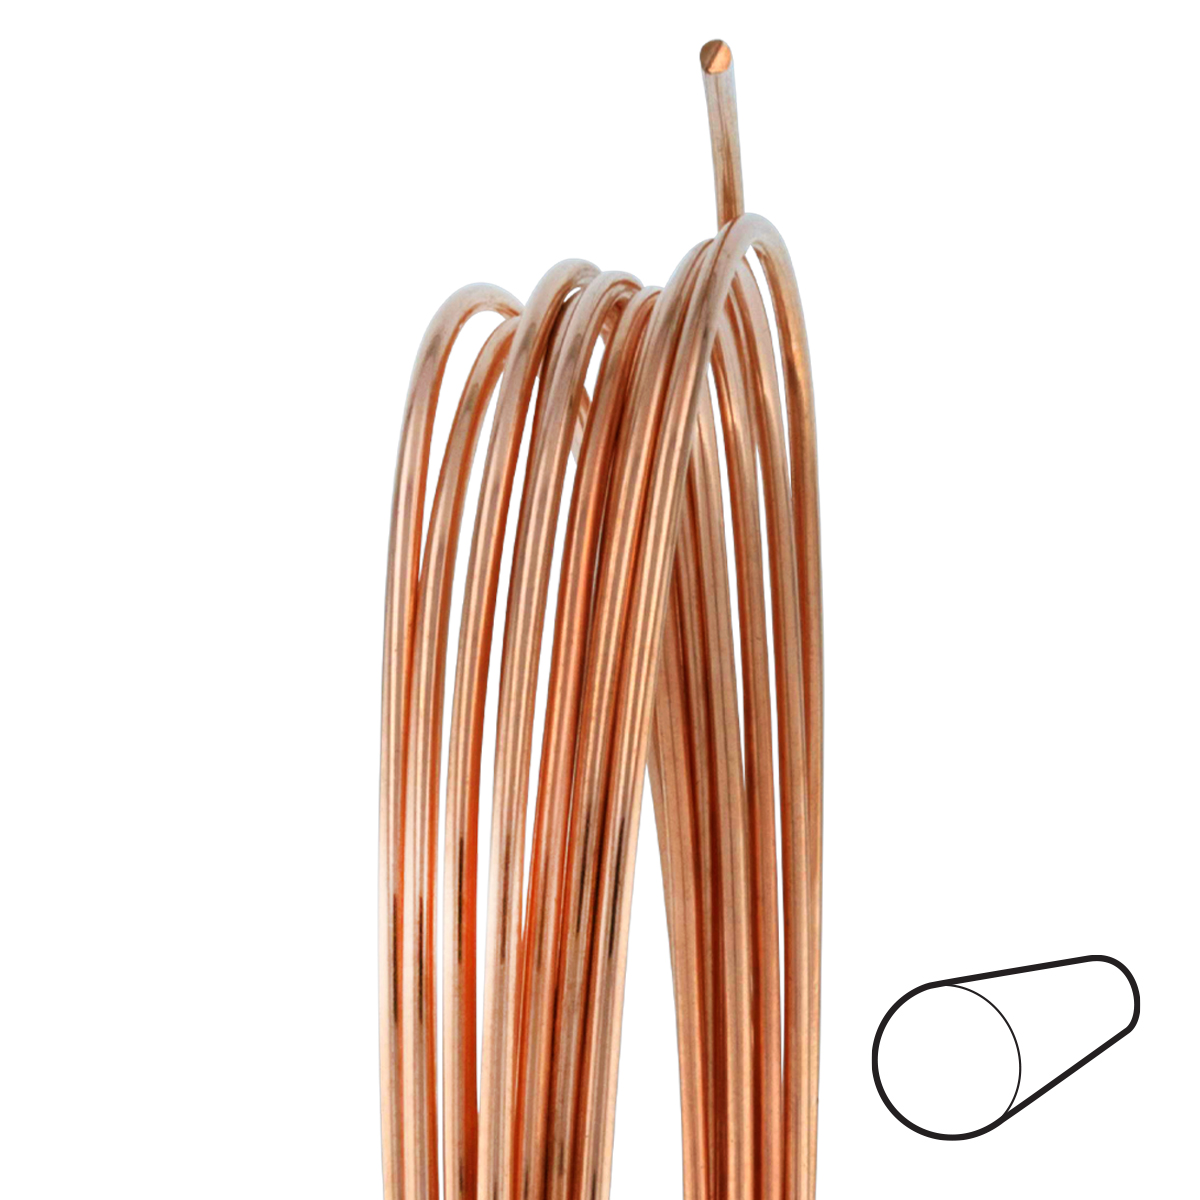 16 Gauge Round Half Hard Copper Wire: Wire Jewelry, Wire Wrap Tutorials